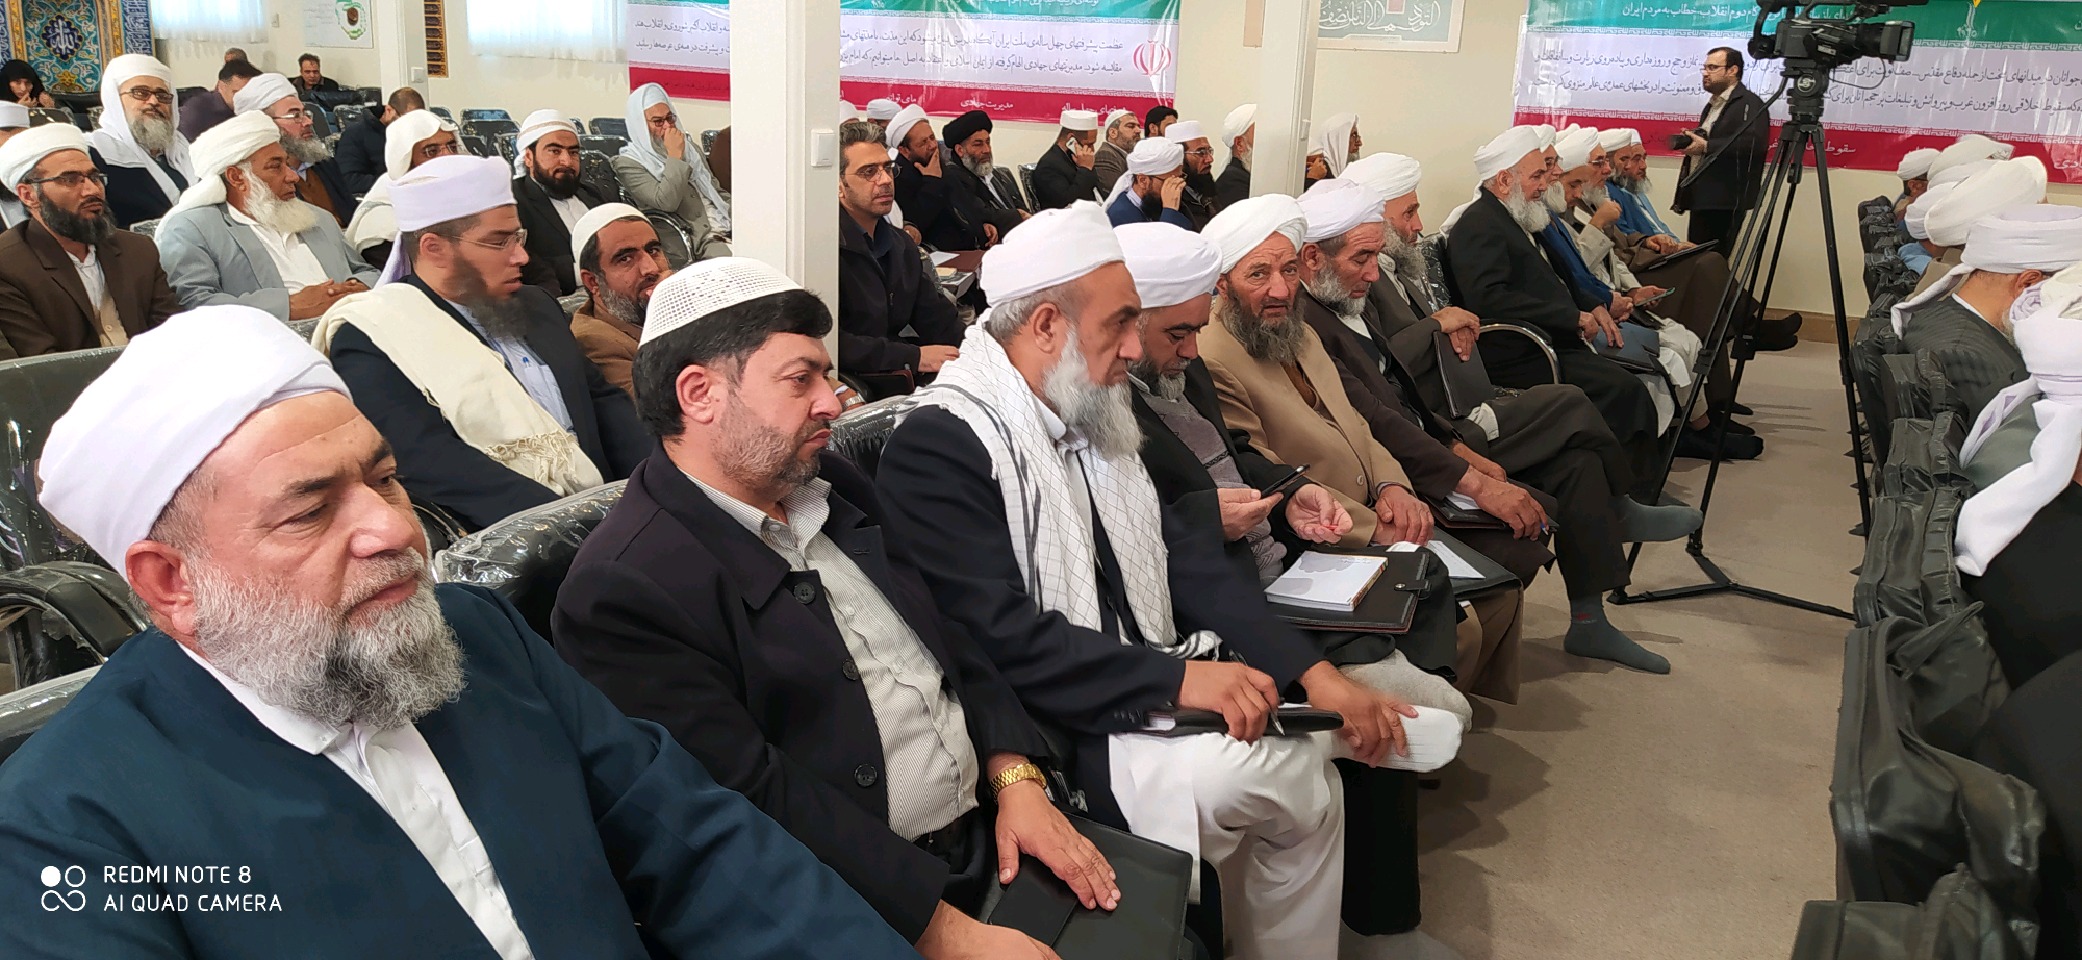 برگزاری همایش راهکارهای امیدآفرینی در امت اسلامی در گام دوم انقلاب در مشهد